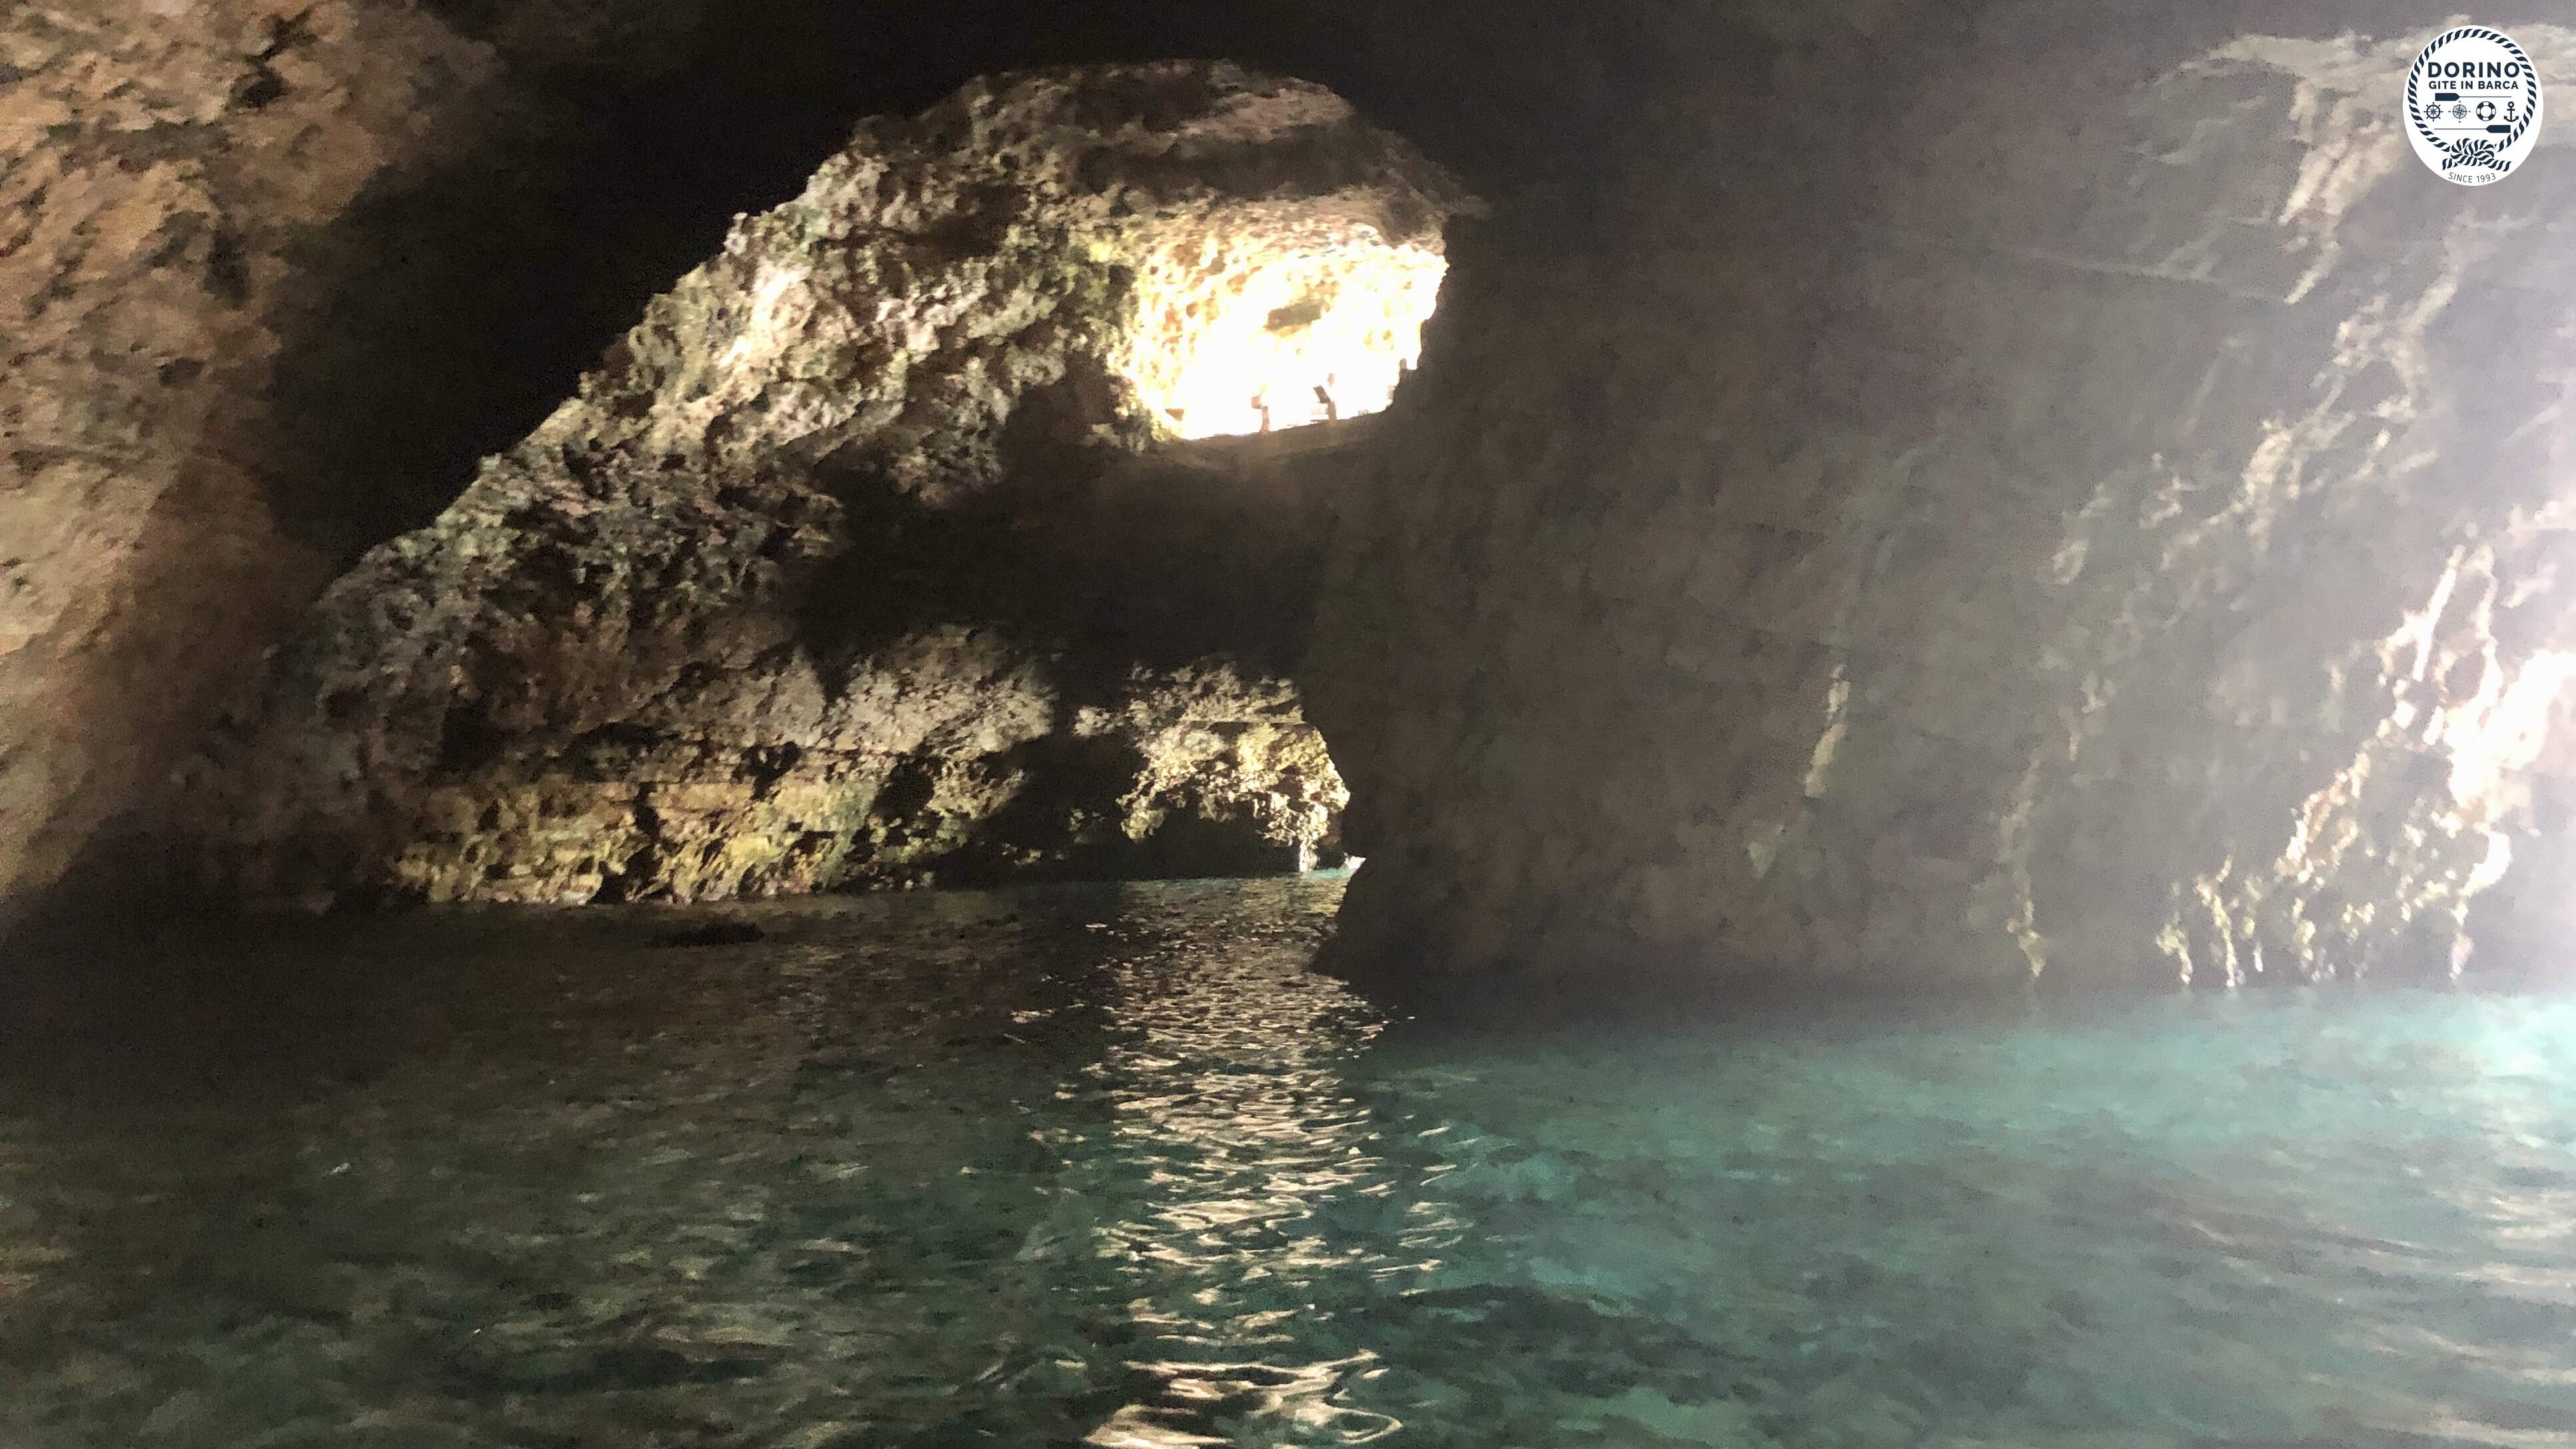 La grotta più grande di Polignano, oggi ospita uno dei ristornati più importanti della Puglia